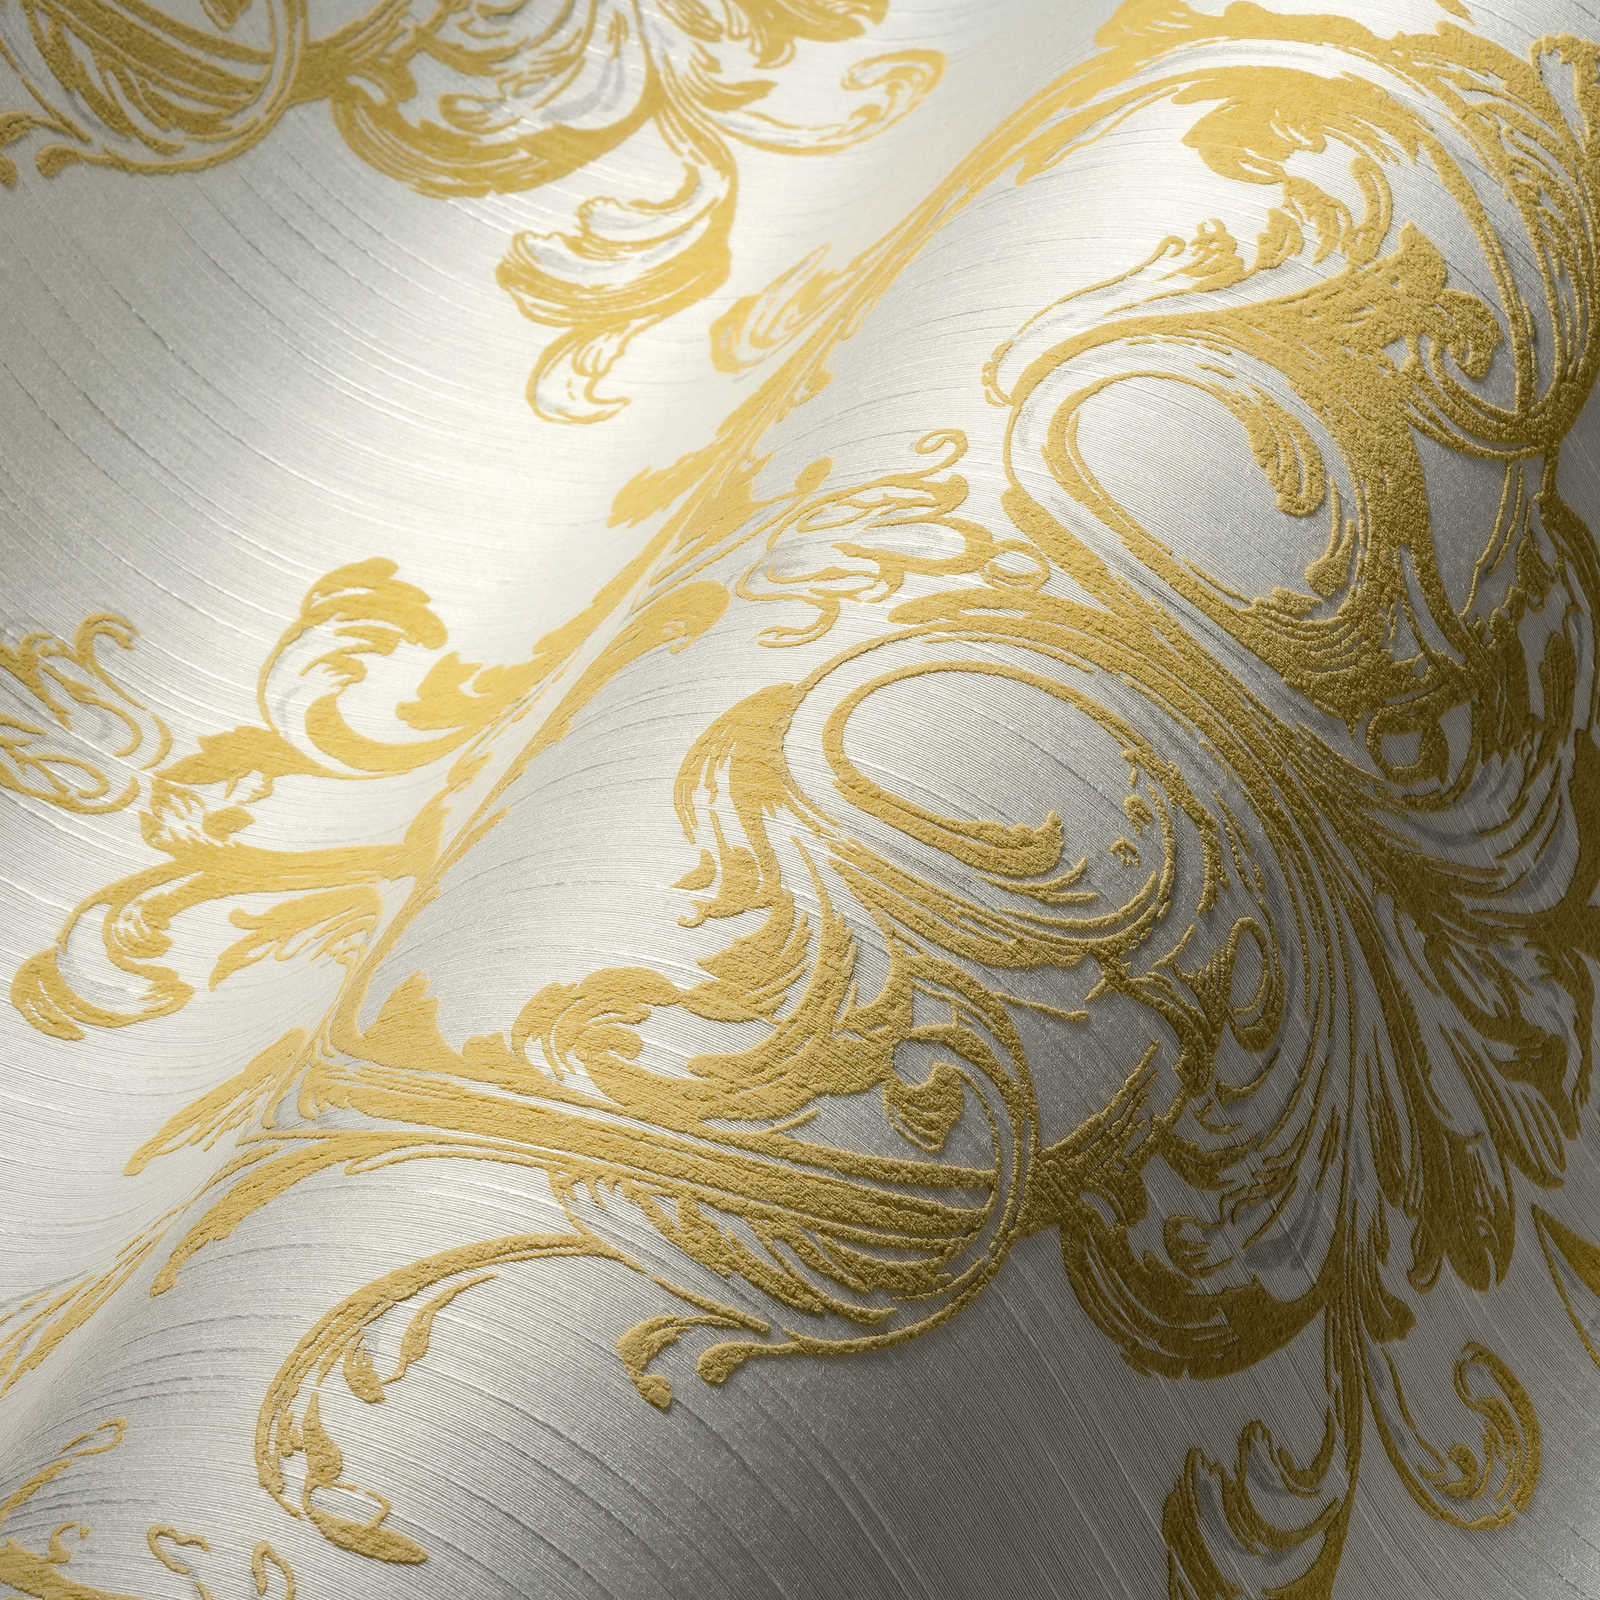             Papier peint intissé ornement historique Design avec effet structuré - or, blanc
        